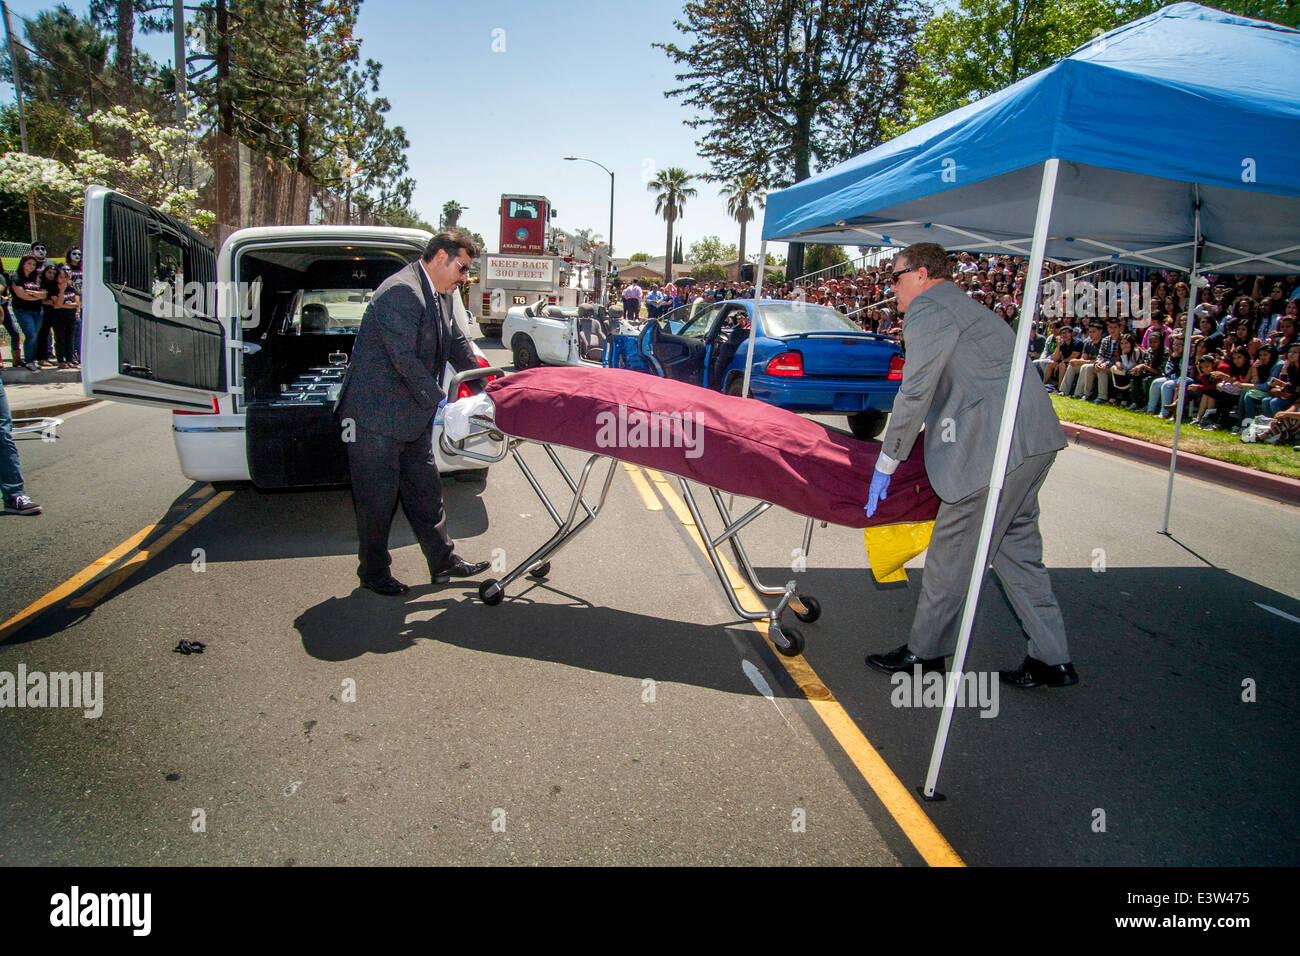 Des bénévoles locaux undertakers recueillir le 'Corpse' de la victime d'un accident dans une dramatisation pour des élèves du secondaire sur les dangers de l'alcool au volant à Anaheim, CA. Remarque foule en arrière-plan. Banque D'Images